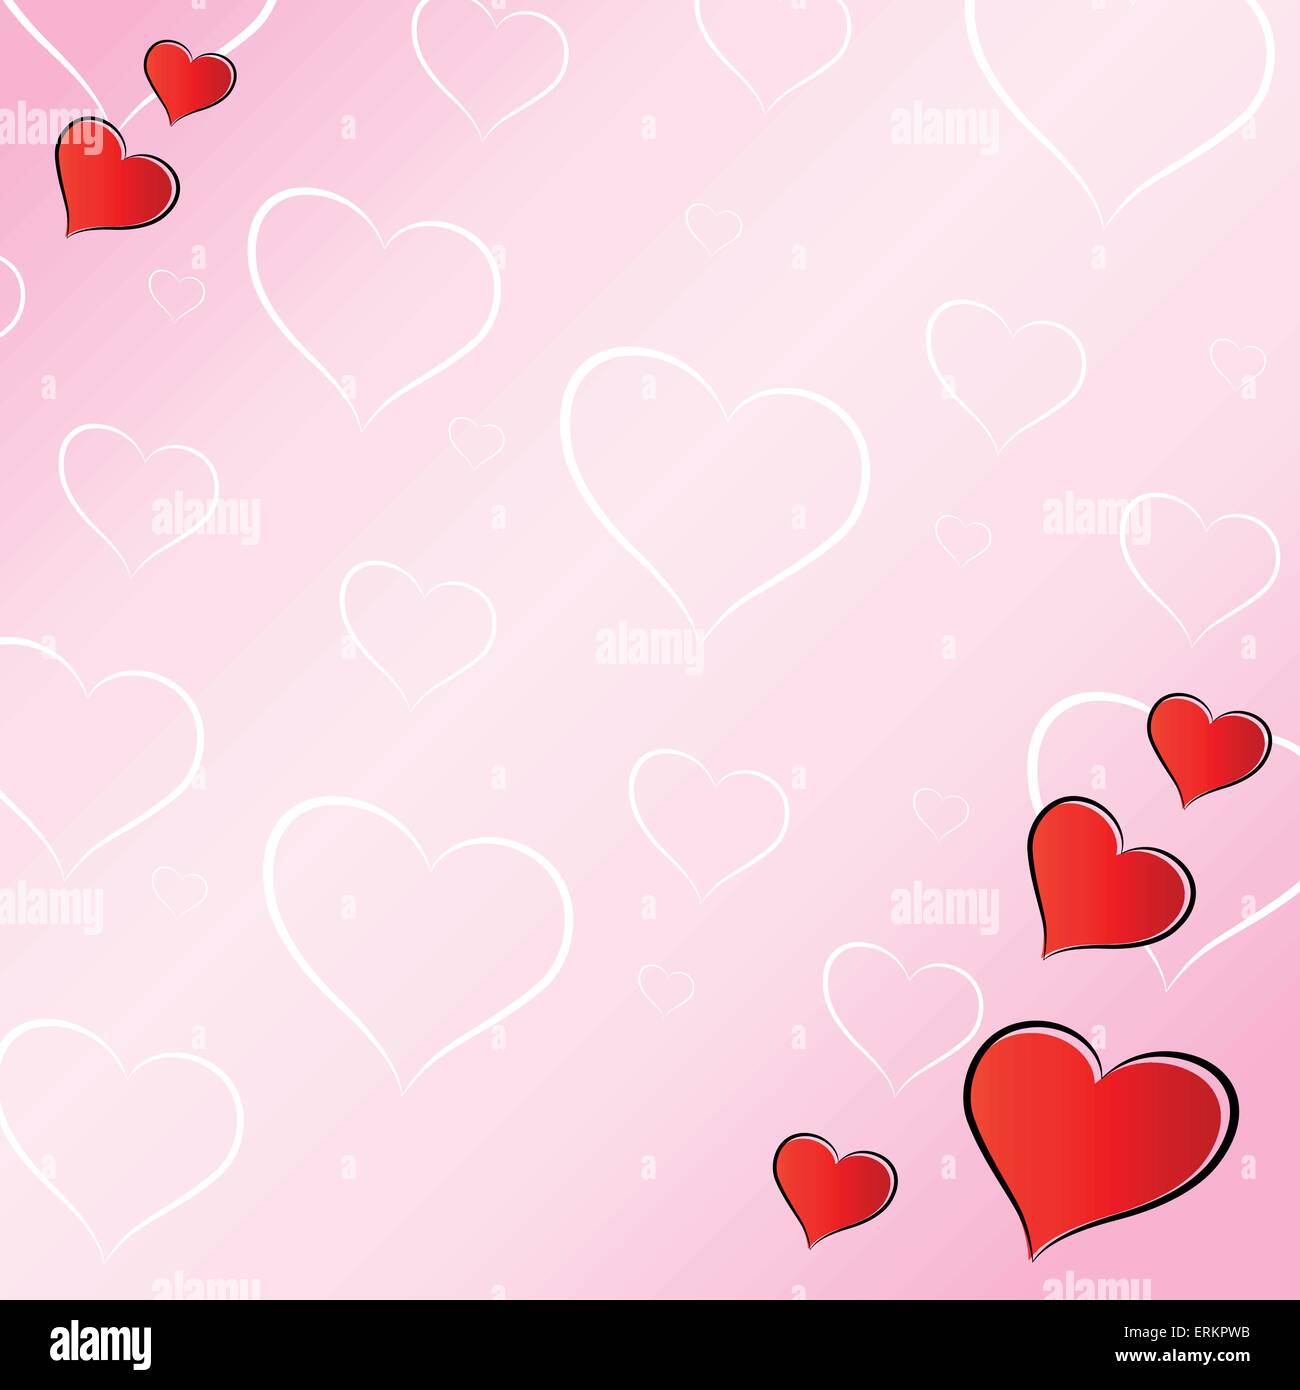 Vektor-Illustration von rosa Liebe Hintergrund Konzept Stock Vektor